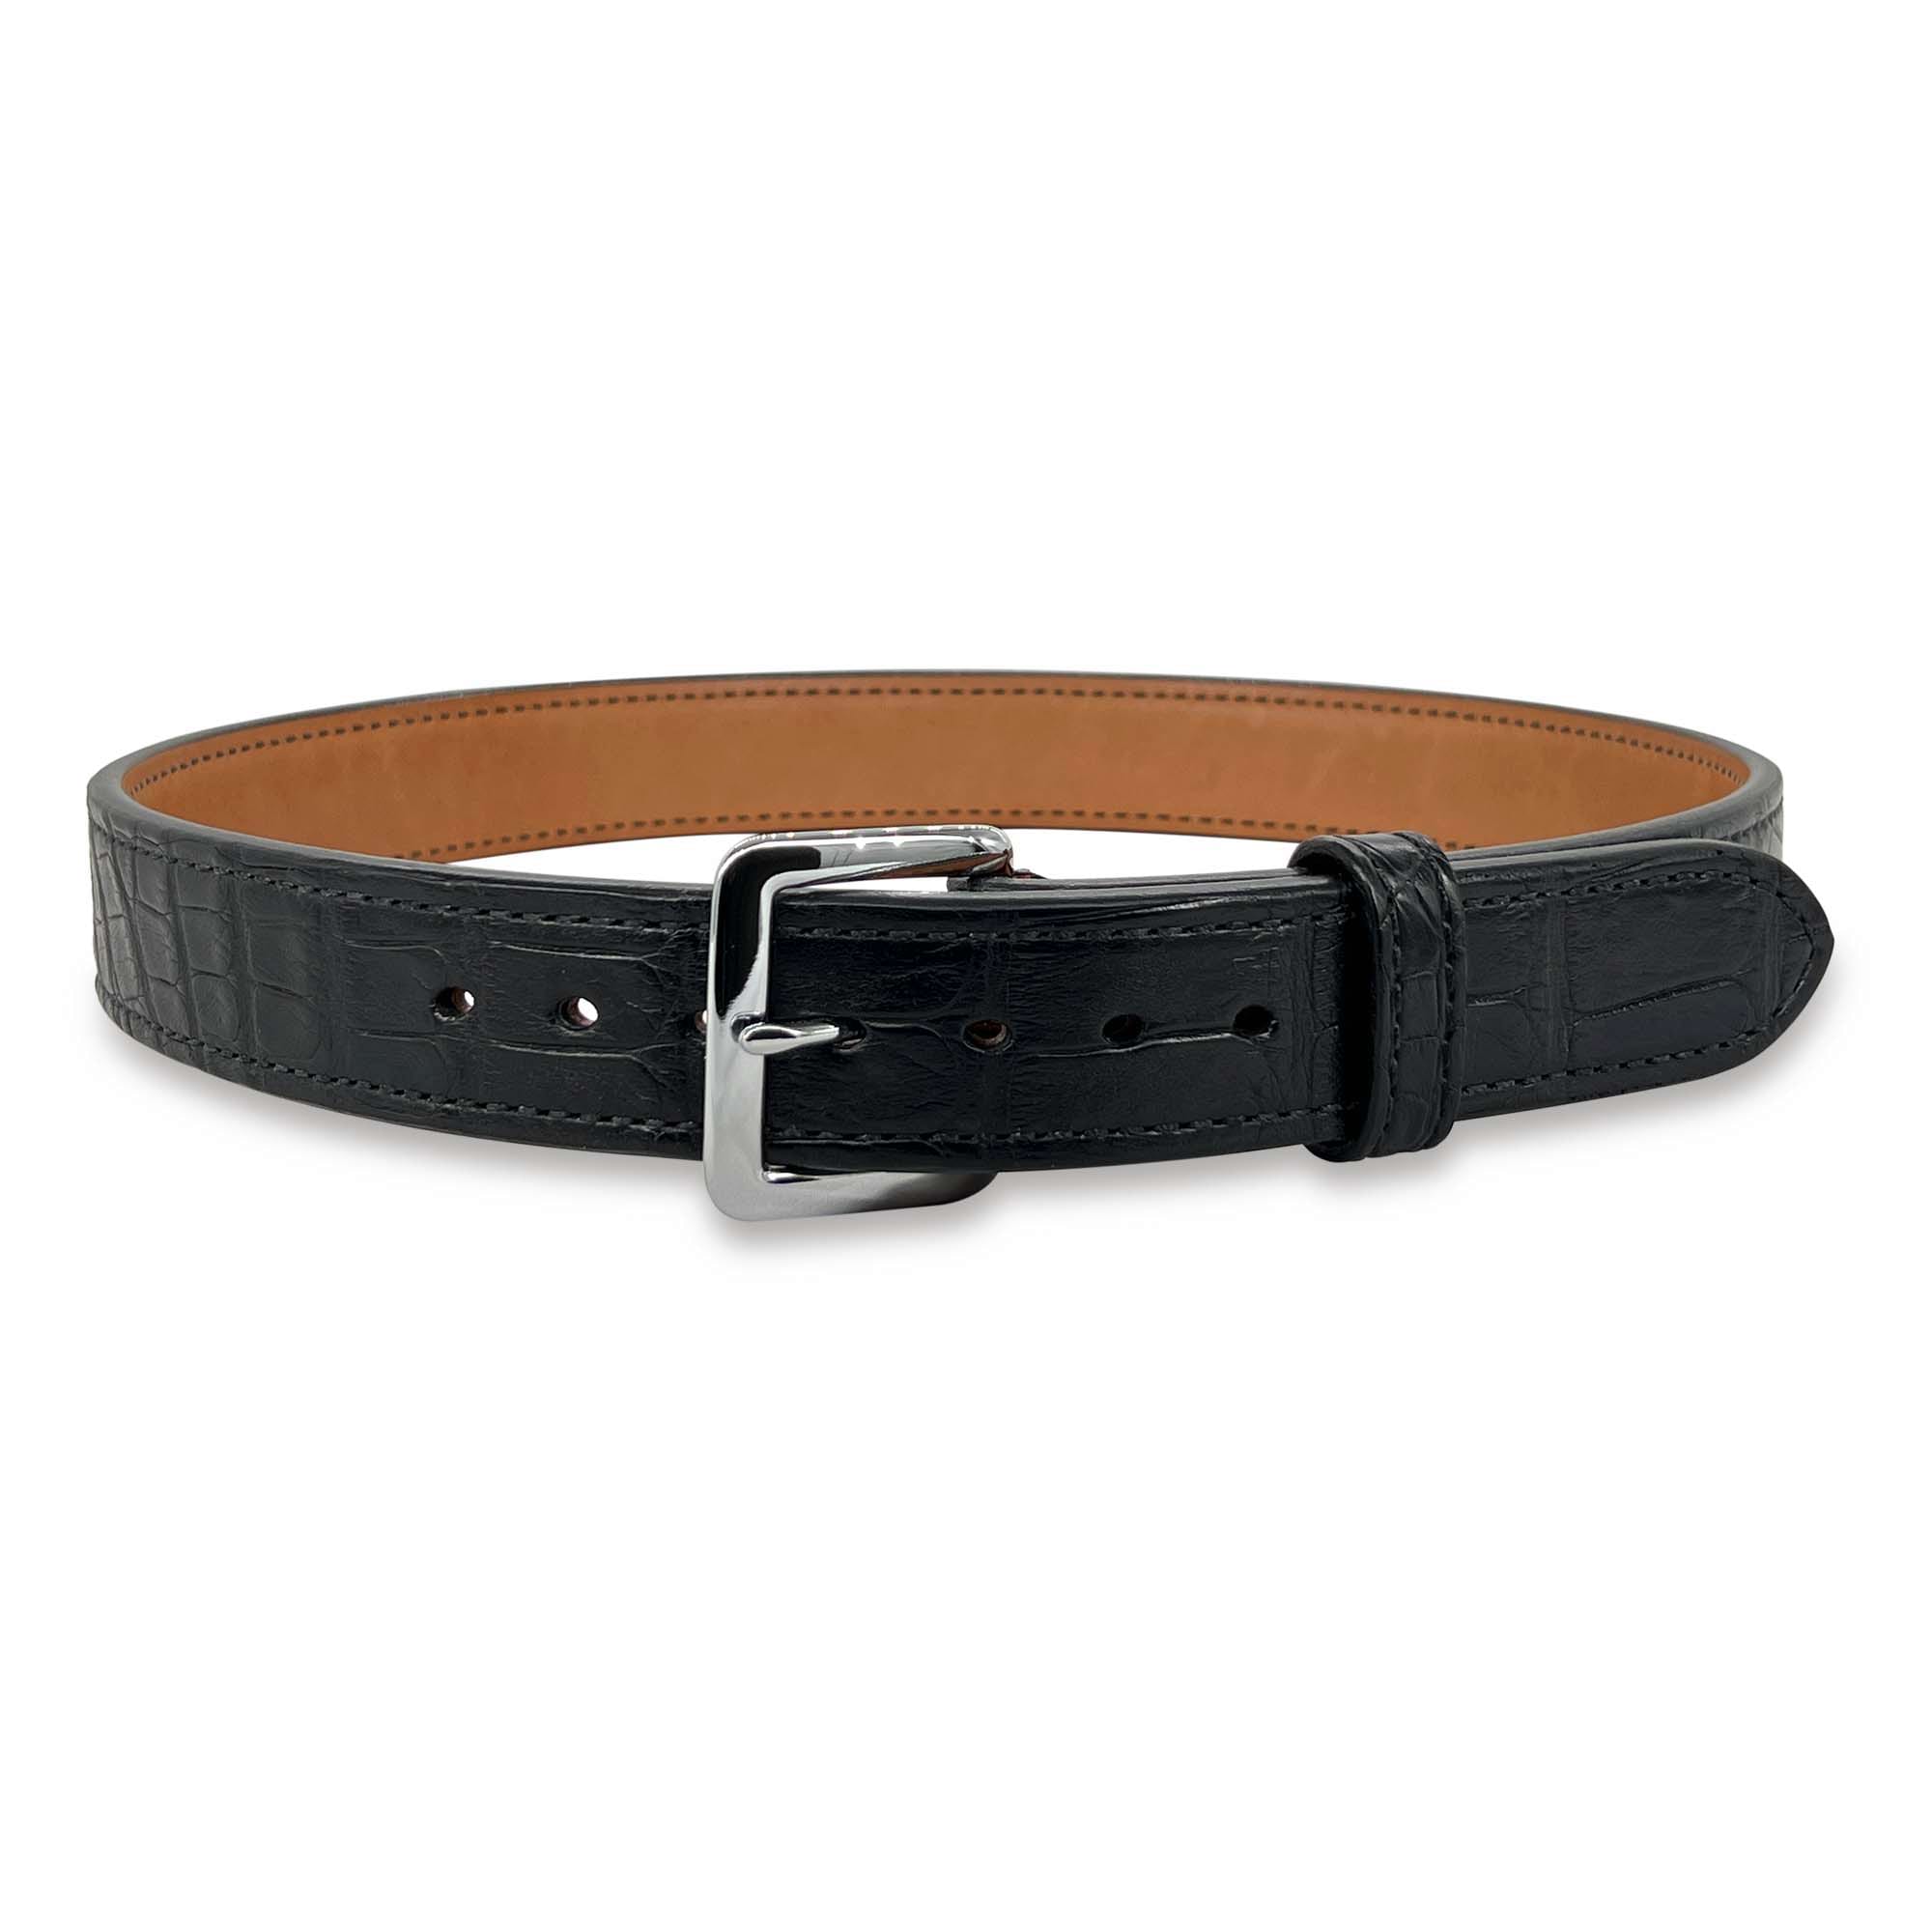 Louis vuitton leather belt - Belts, Facebook Marketplace